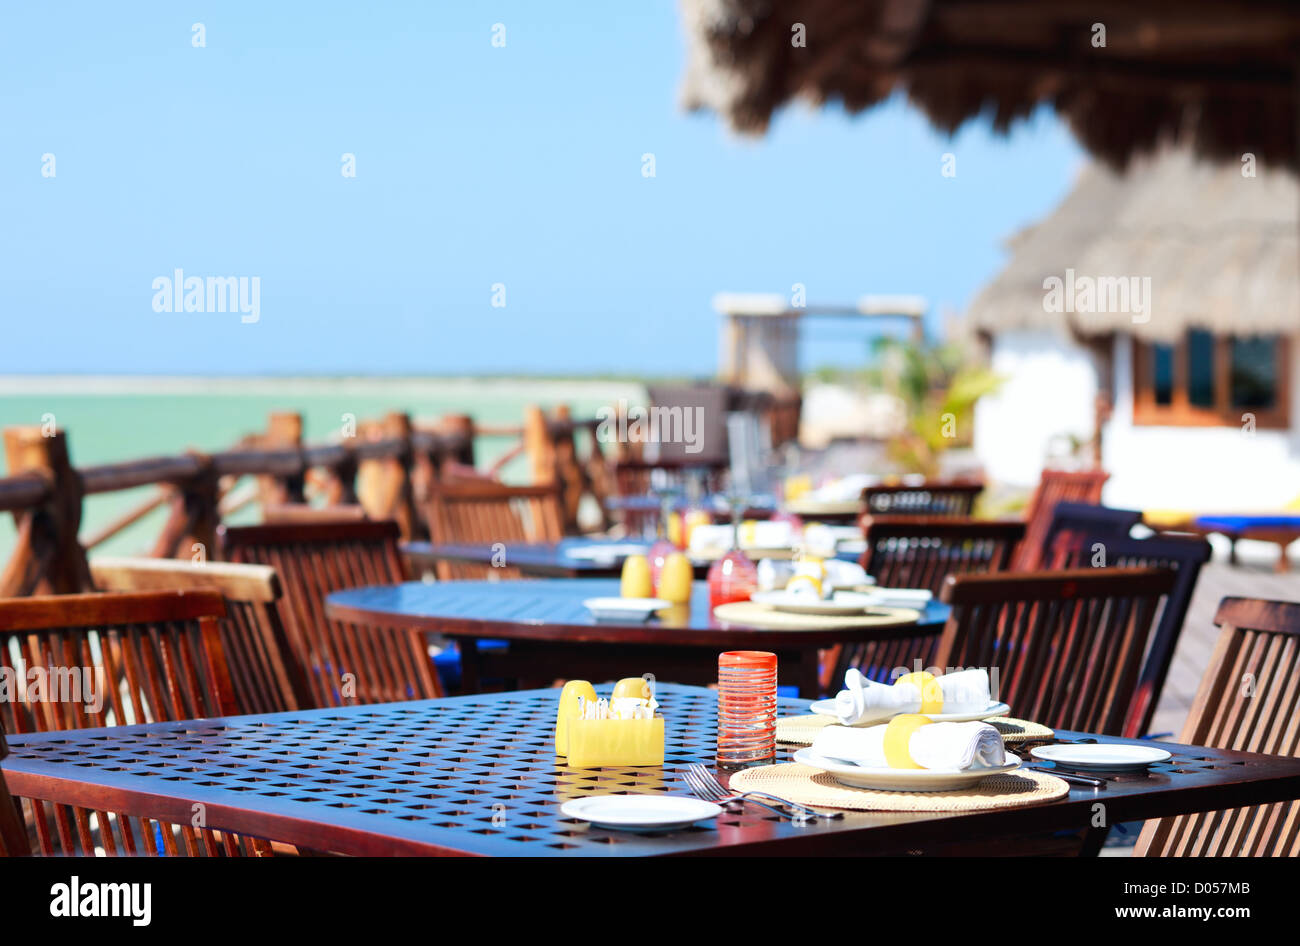 Seaside restaurant Stock Photo